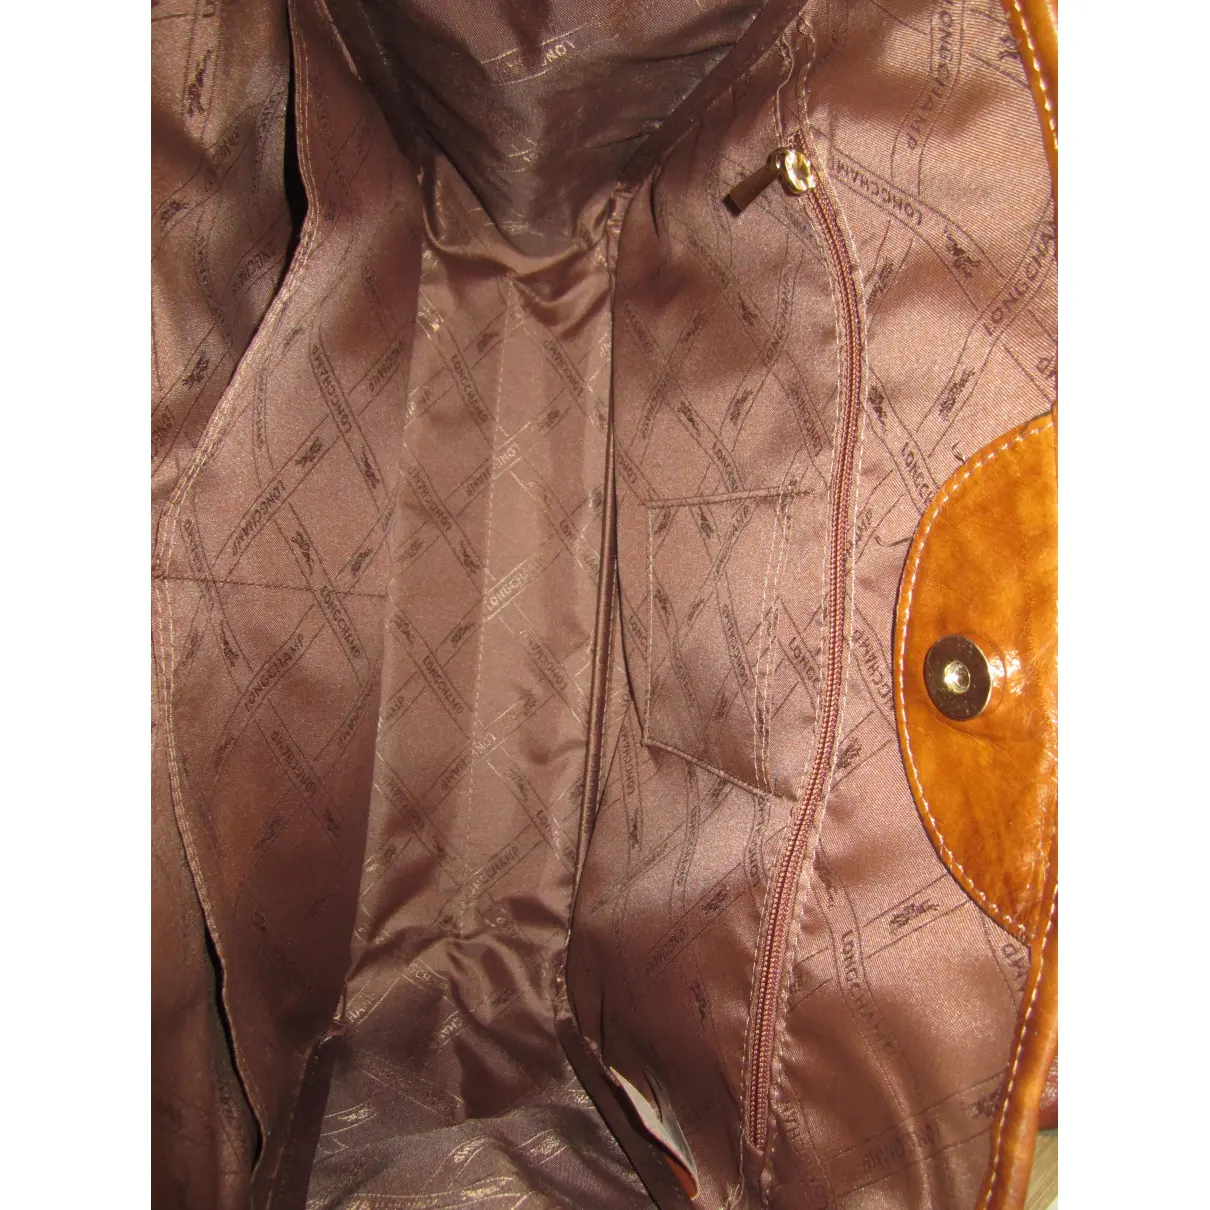 Roseau exotic leathers handbag Longchamp